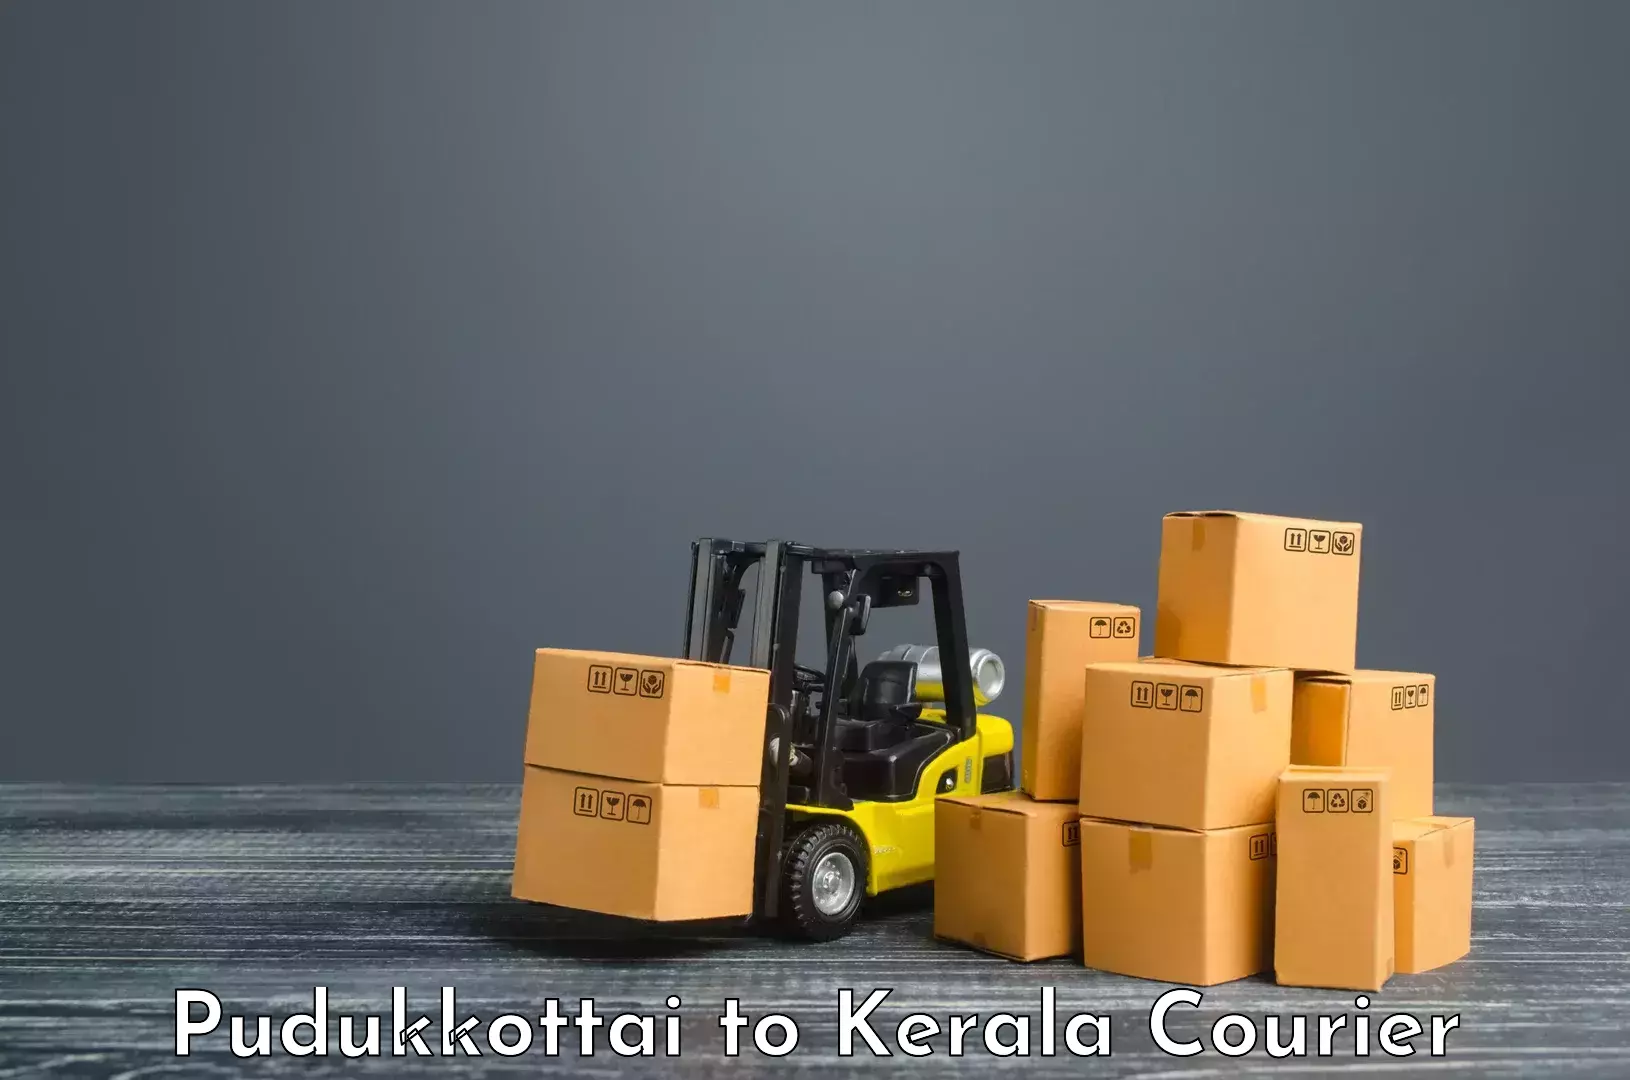 Quality courier partnerships Pudukkottai to Manjeshwar